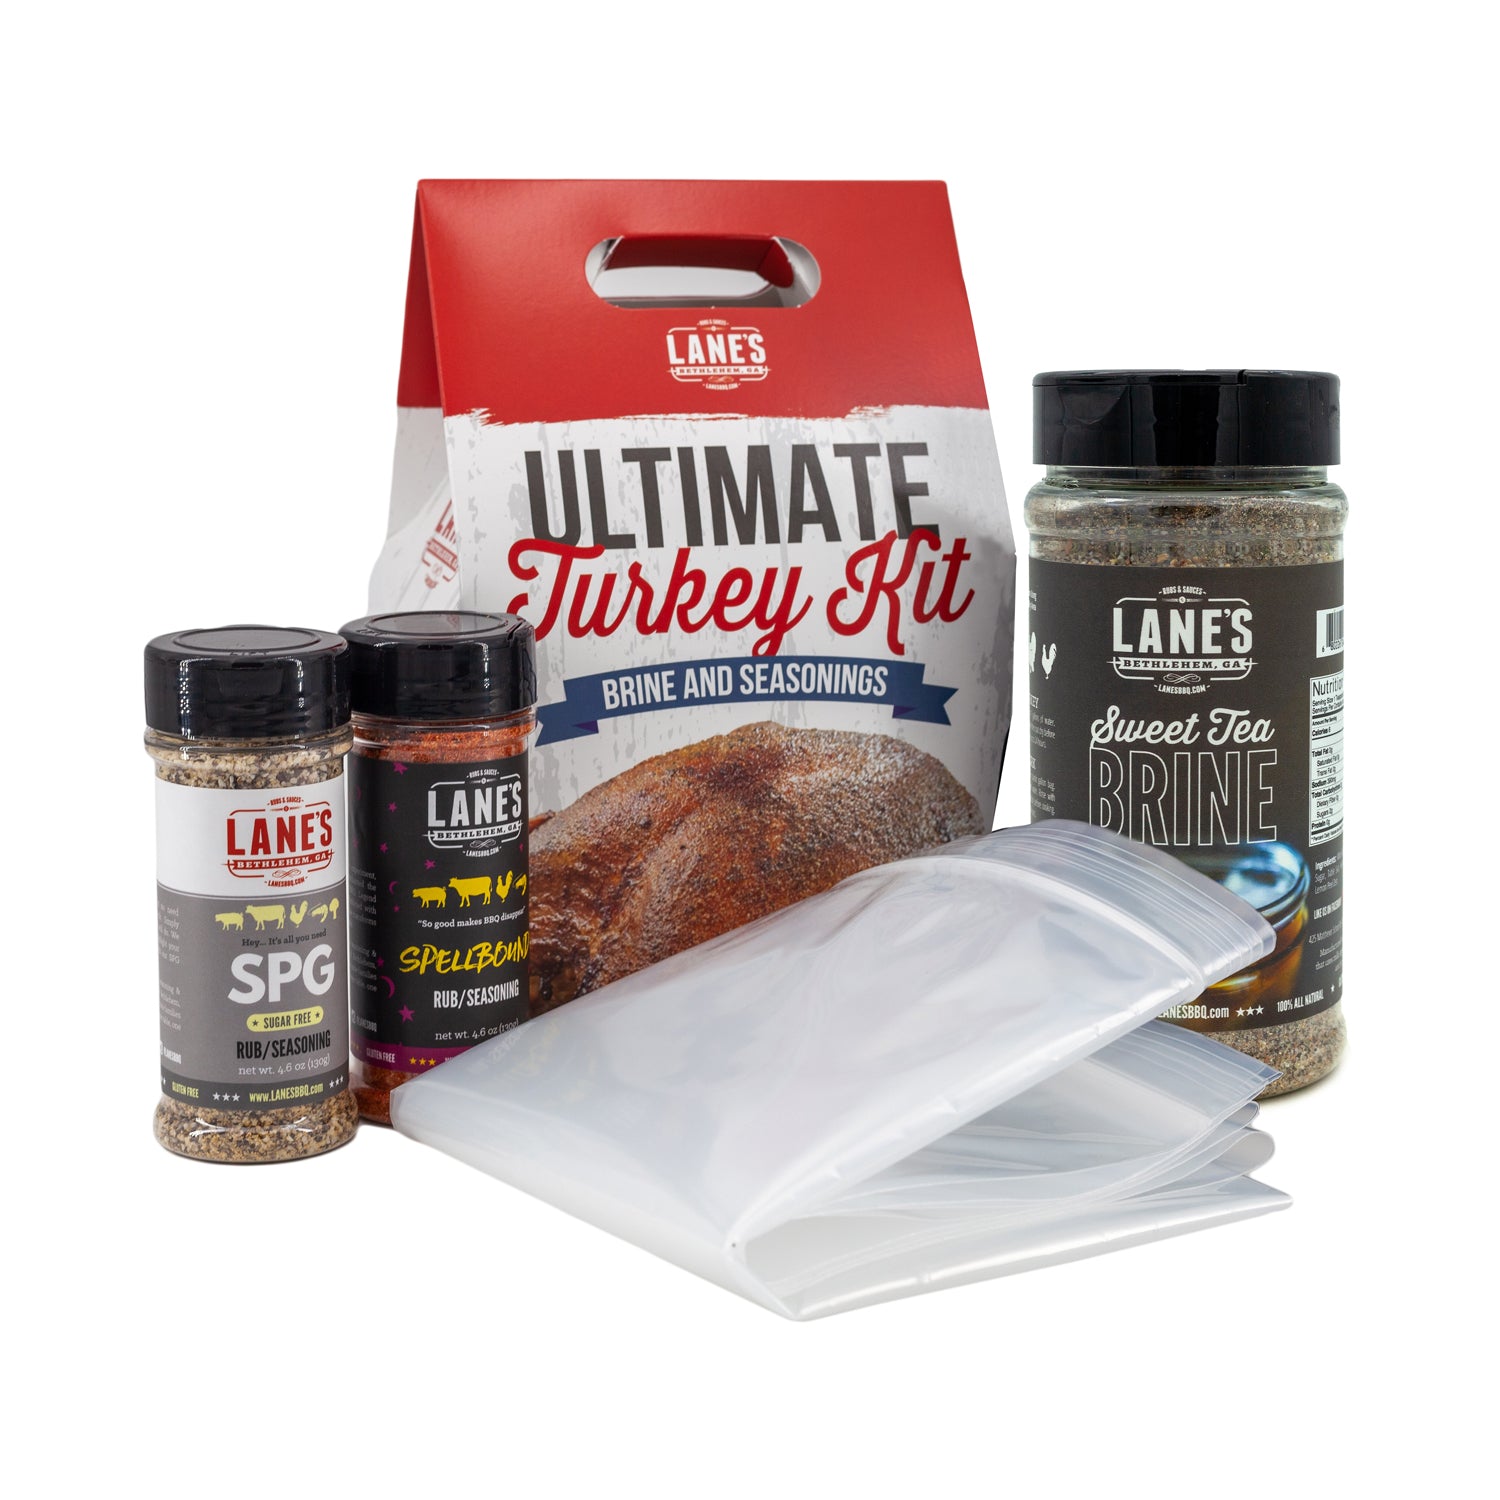 Ultimate Turkey Brine Kit with Bag (Brine + Rubs + Brine Bag)